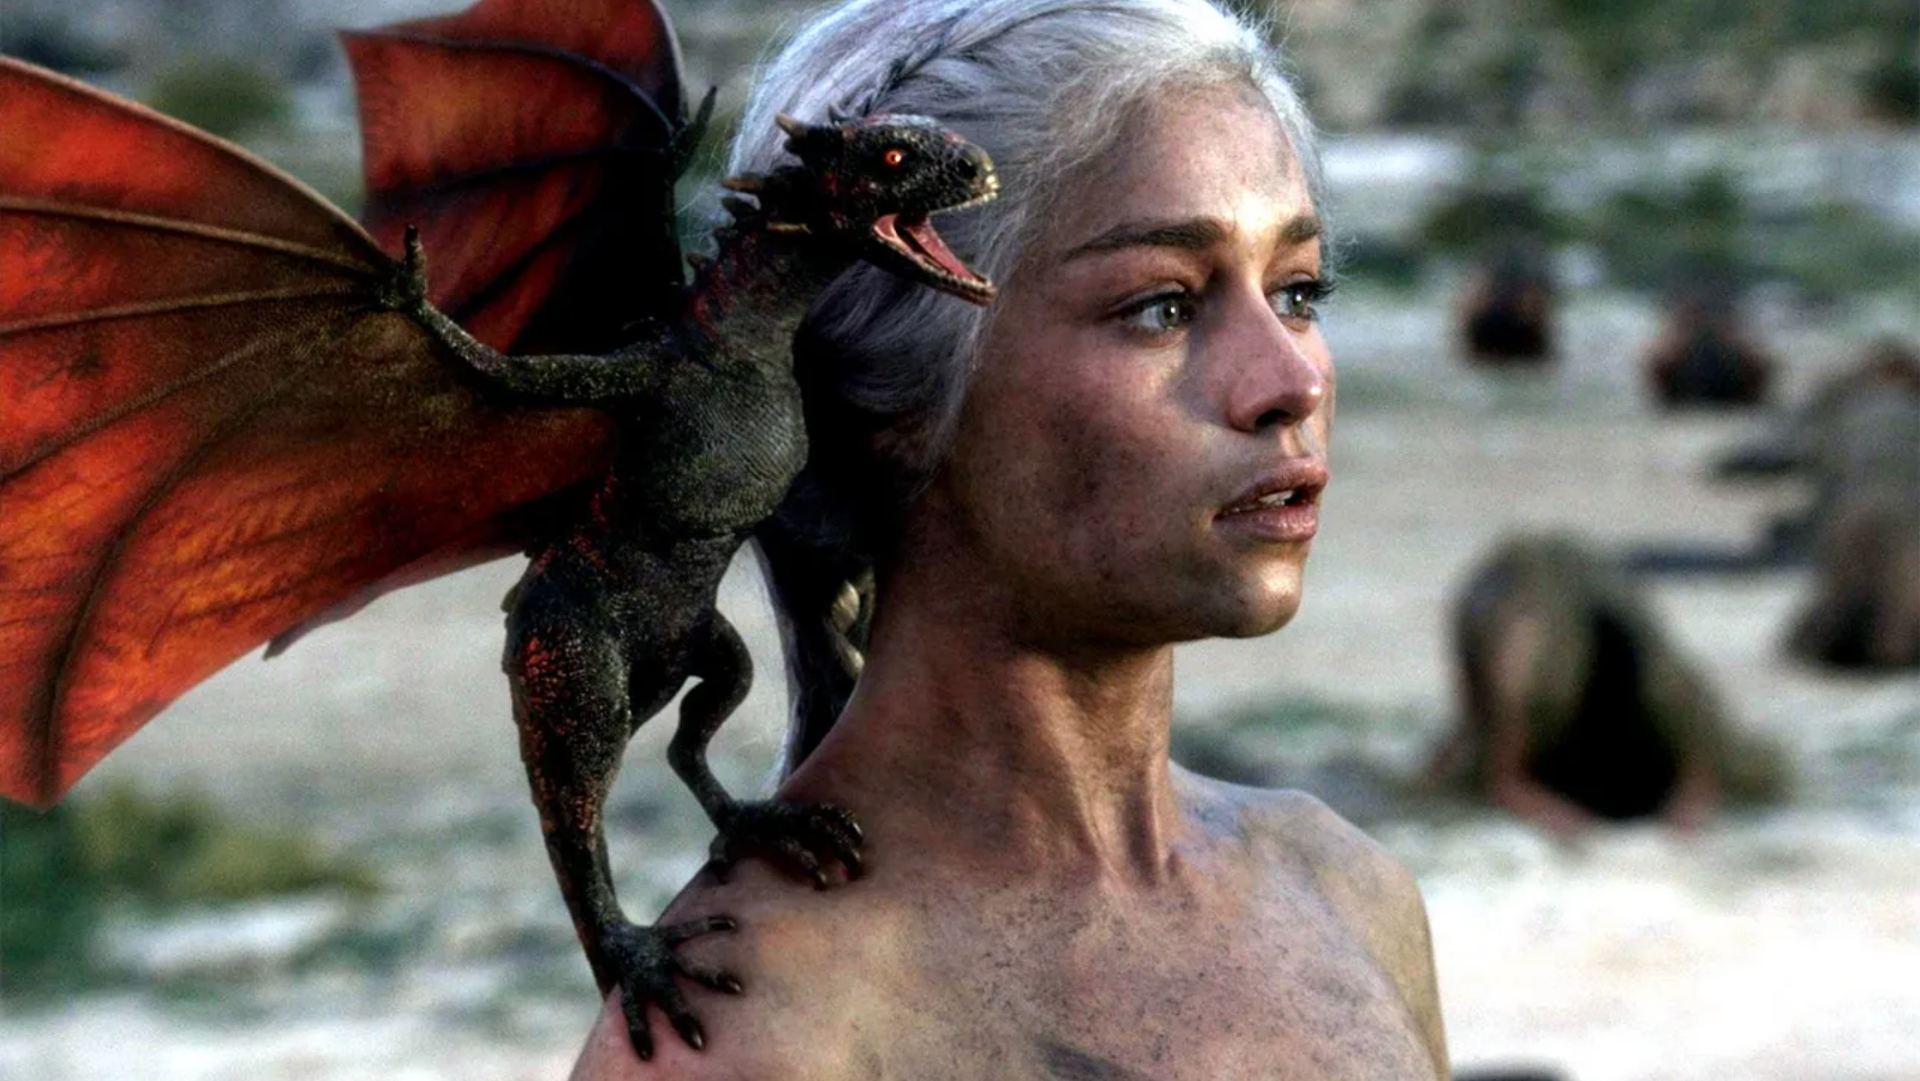 Daenerys emergindo das cinzas com o bebê Drogon no ombro.